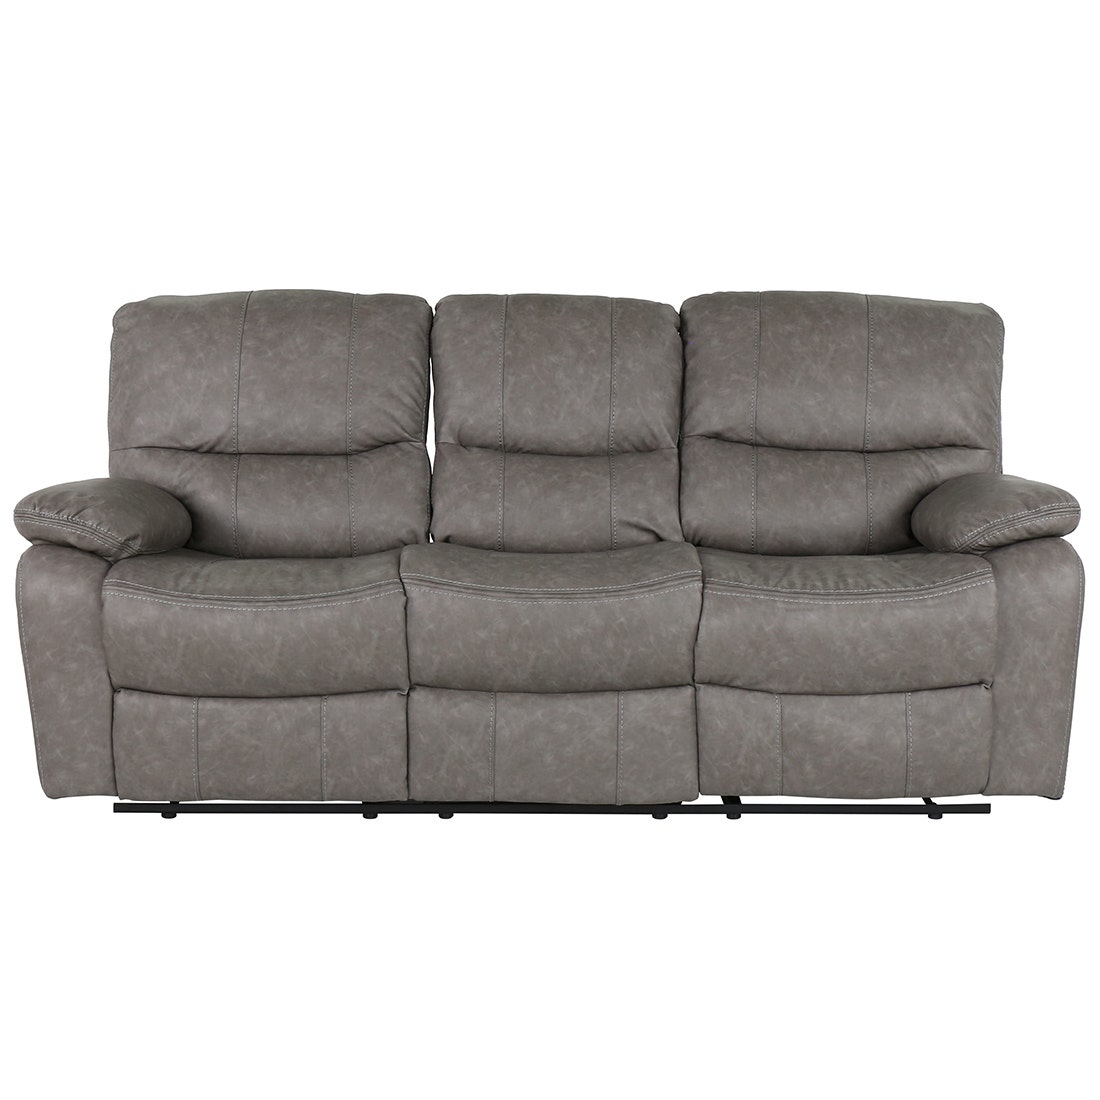 19205238-lamter-furniture-sofa-recliner-recliners-01